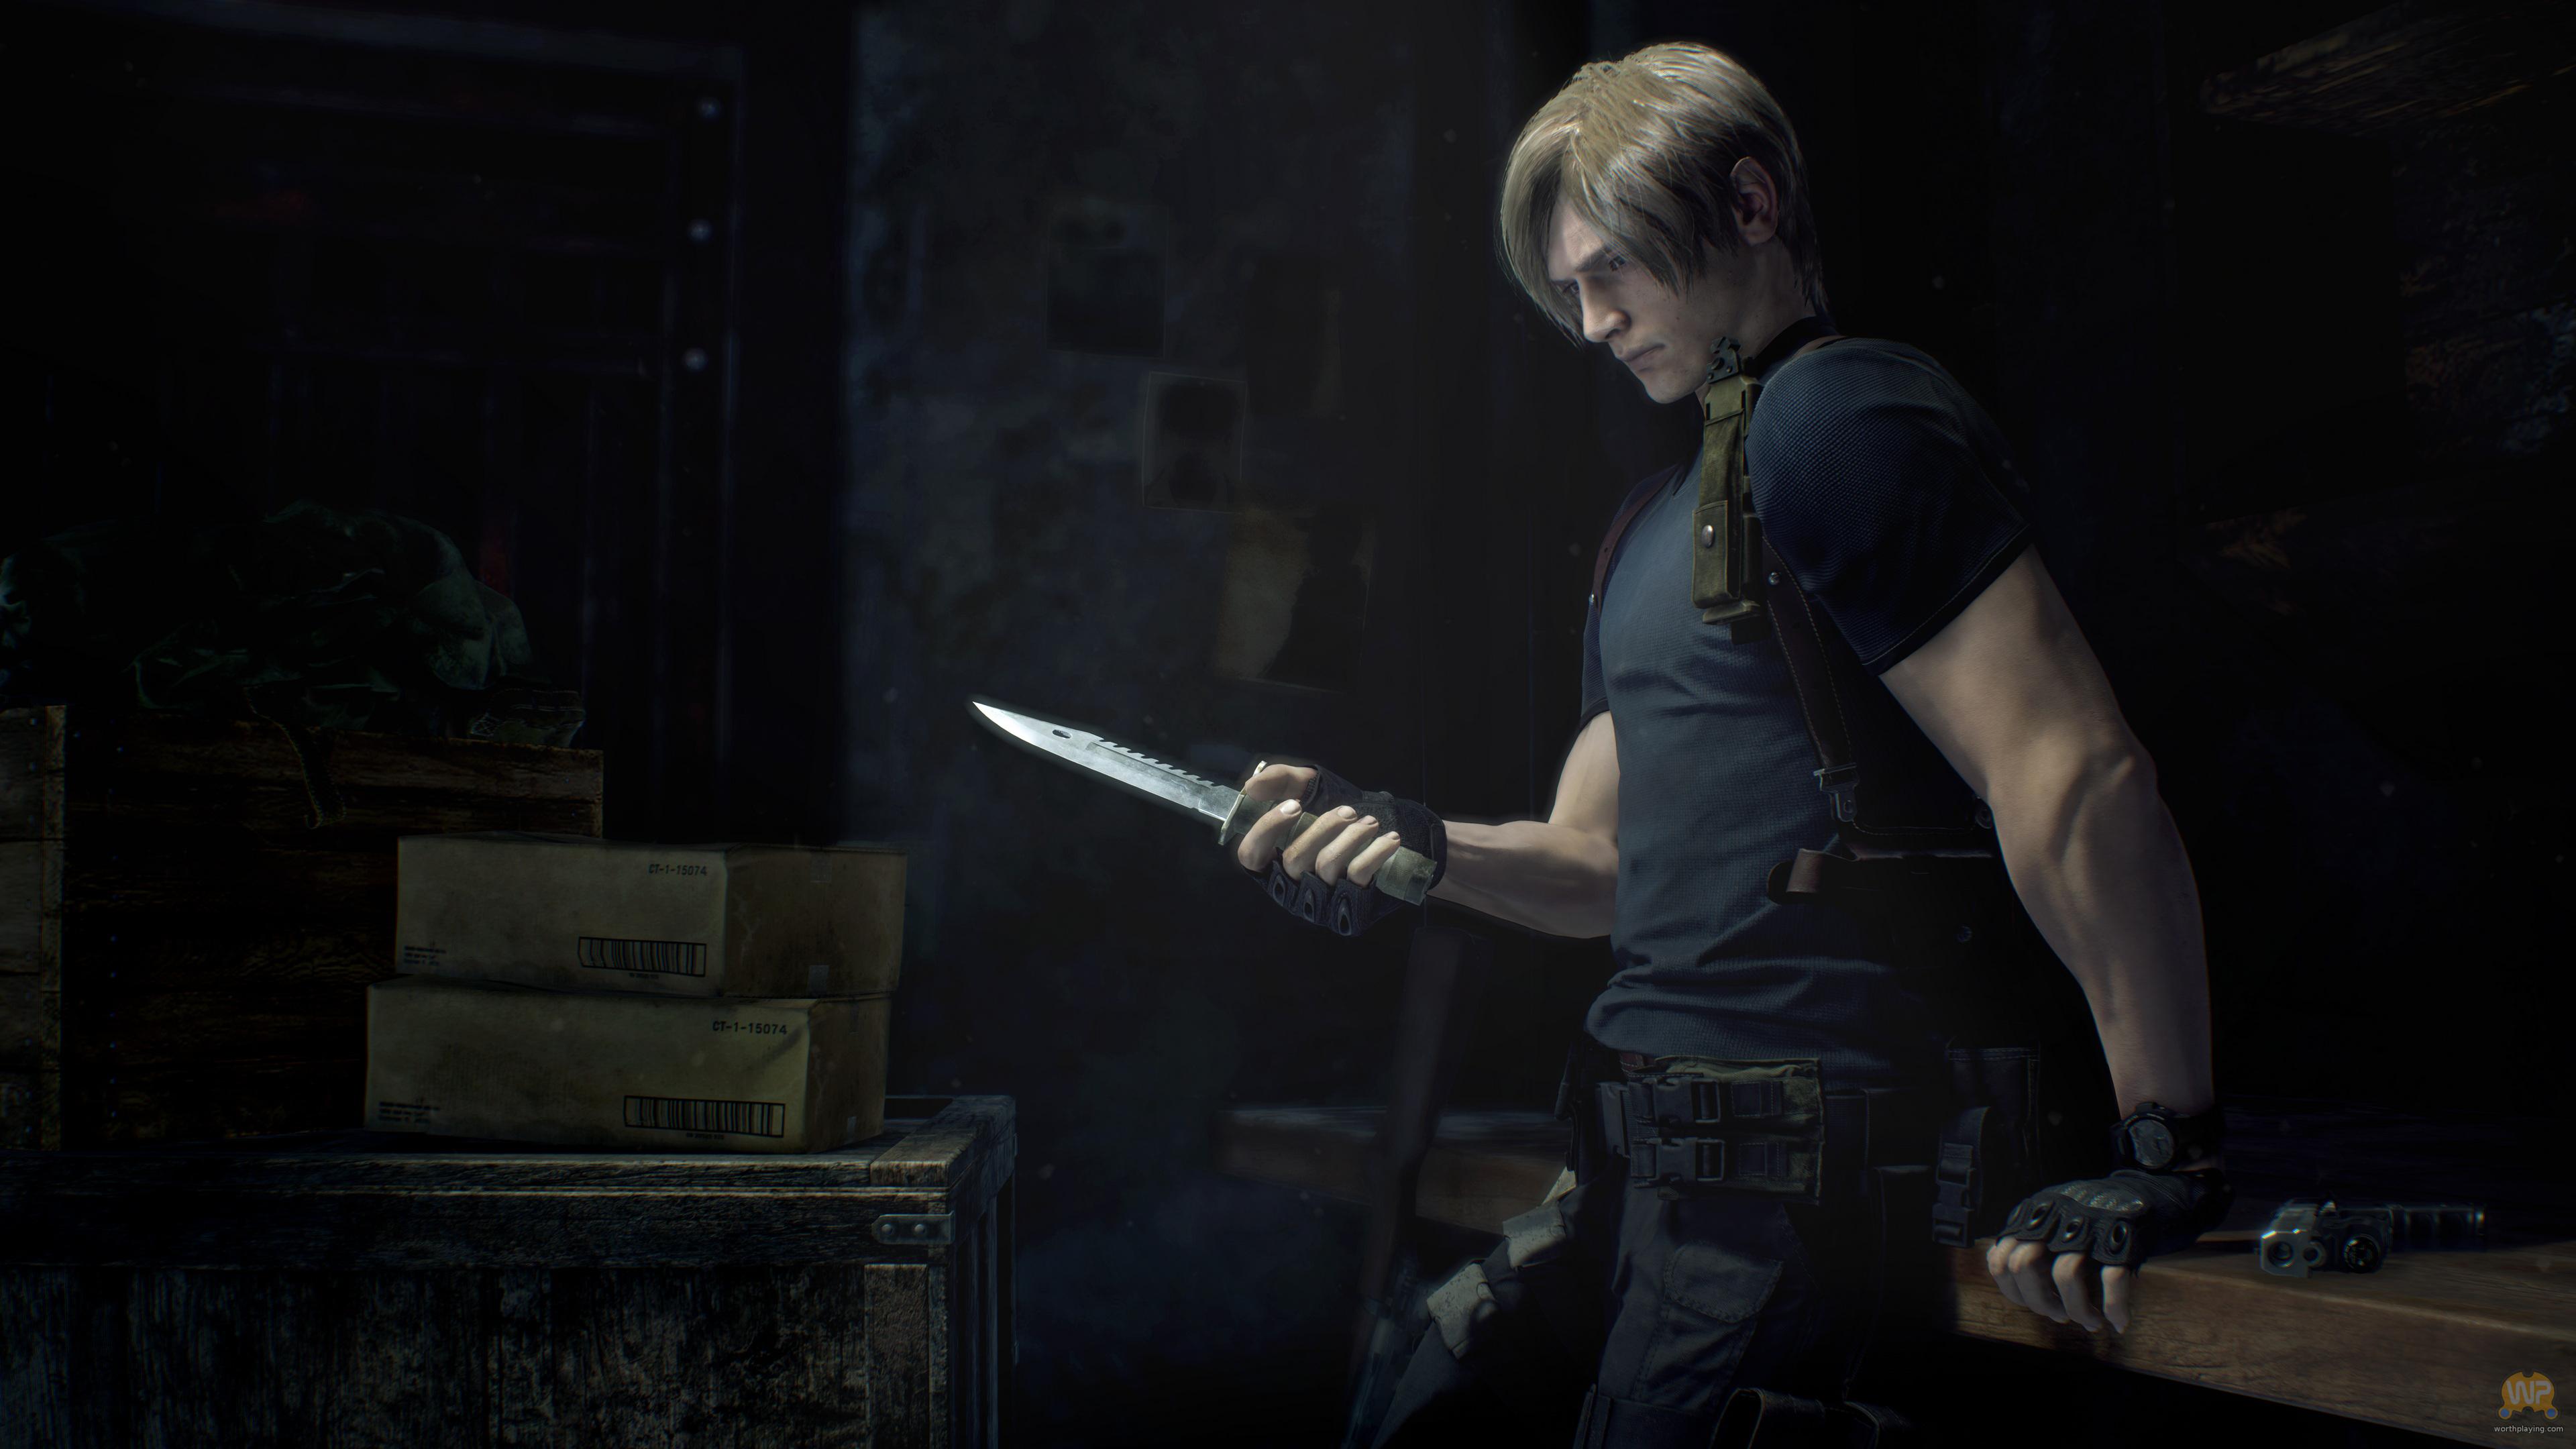 Resident Evil 4 - 2nd Trailer